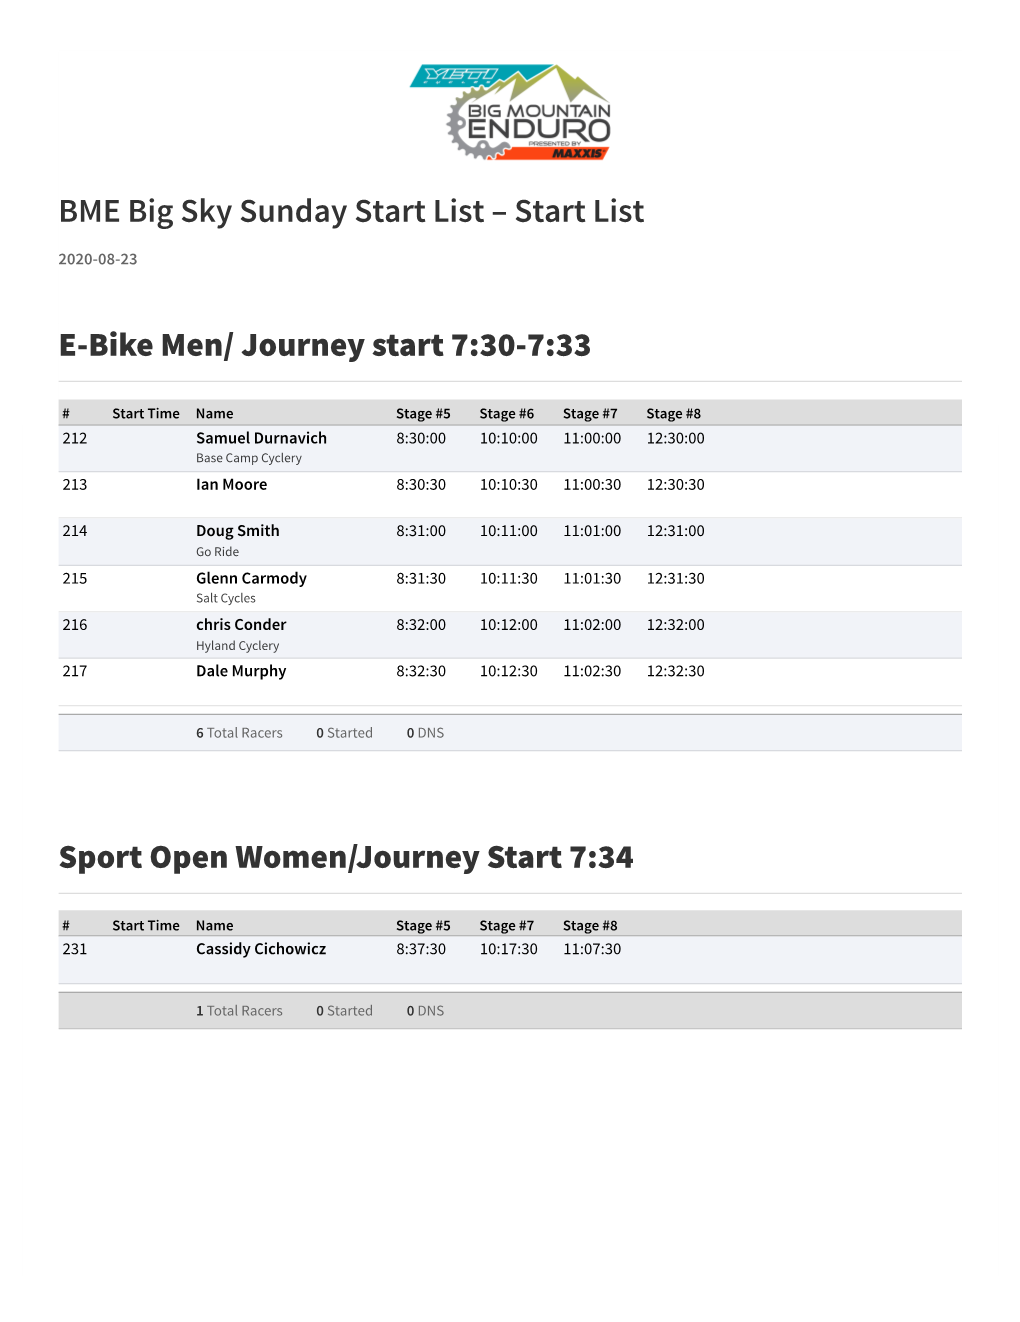 BME Big Sky Sunday Start List – Start List E-Bike Men/ Journey Start